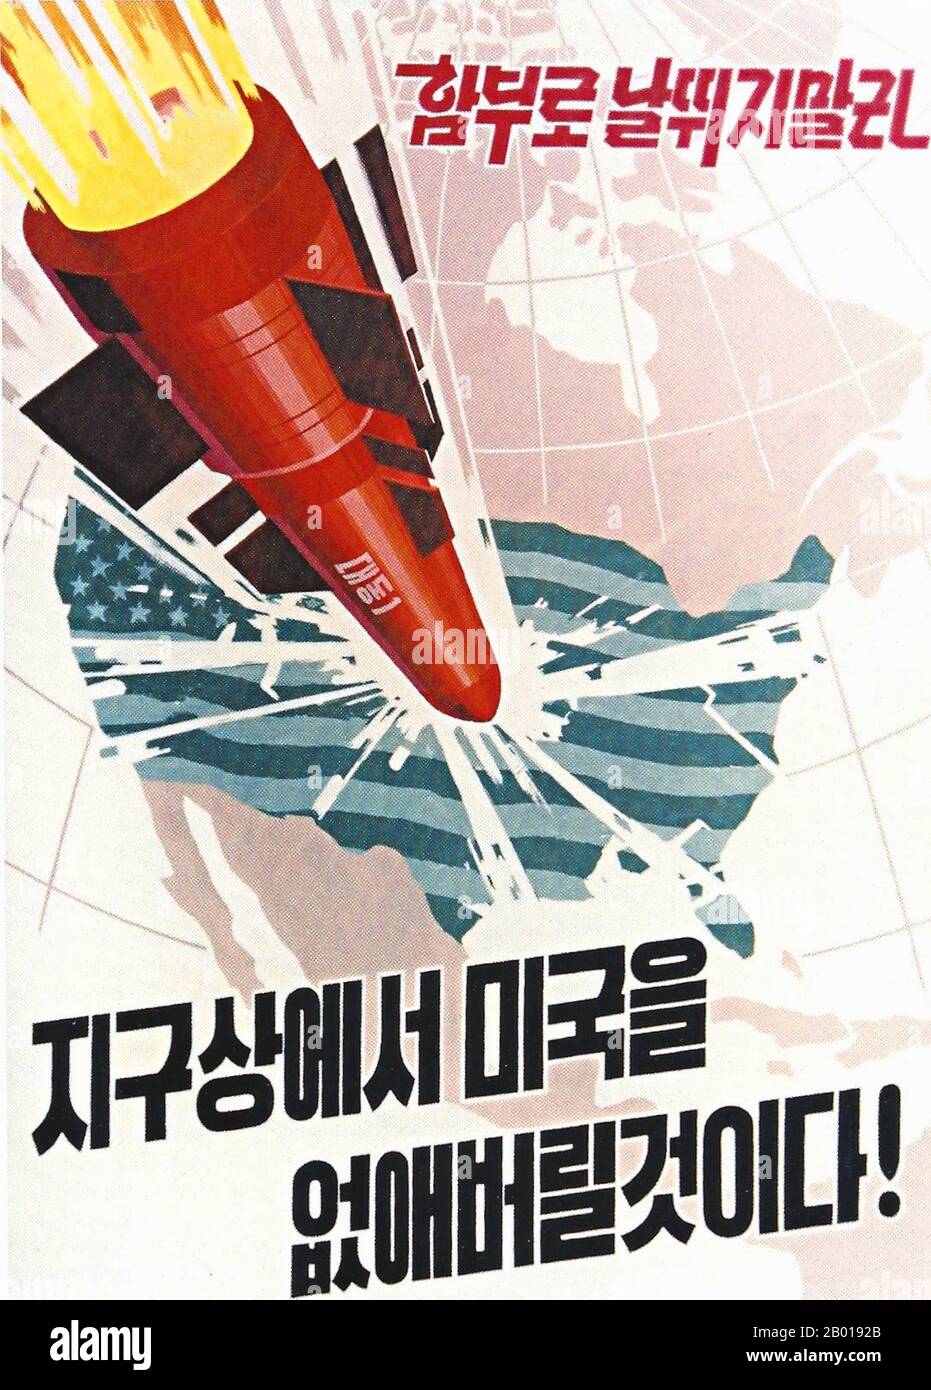 Korea: Nordkoreanisches (DVRK) Propagandaplakat zeigt eine nukleare Rakete, die in die kontinentalen Vereinigten Staaten abstürzt, c. 1950s. Sozialistischer Realismus ist ein Stil realistischer Kunst, der sich unter dem Sozialismus in der Sowjetunion entwickelte und in anderen kommunistischen Ländern zu einem dominanten Stil wurde. Der sozialistische Realismus ist ein teleologisch orientierter Stil, der die Förderung der Ziele des Sozialismus und Kommunismus zum Ziel hat. Obwohl verwandt, sollte sie nicht mit dem sozialen Realismus verwechselt werden, einer Art Kunst, die Themen sozialer Belang realistisch darstellt. Stockfoto